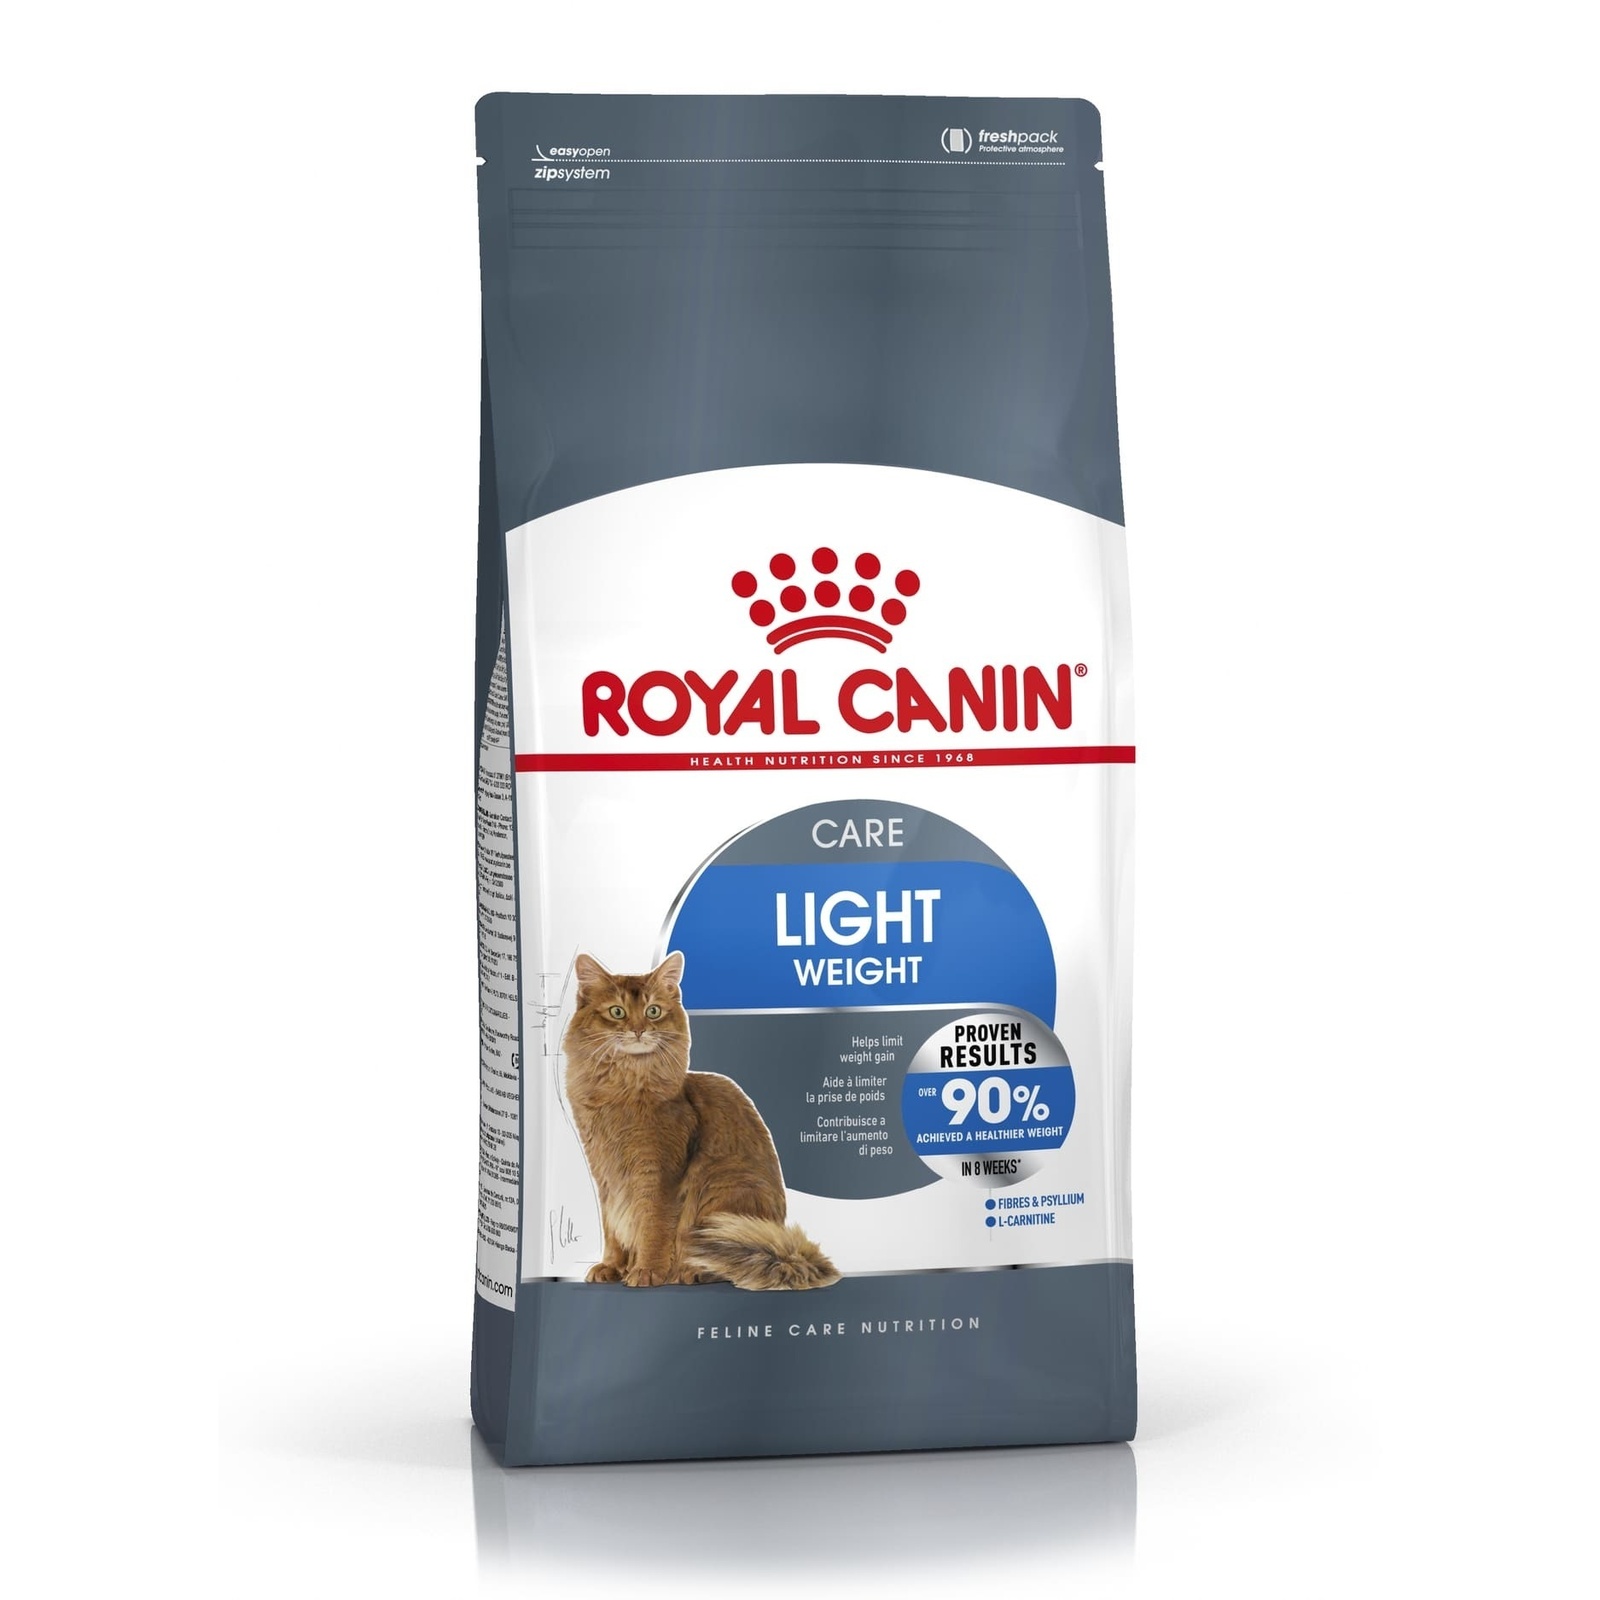 Royal Canin Корм Royal Canin для кошек от 1 года Профилактика избыточного веса (8 кг) royal canin light weight care полнорационный сухой корм для взрослых кошек для профилактики лишнего веса 3 кг